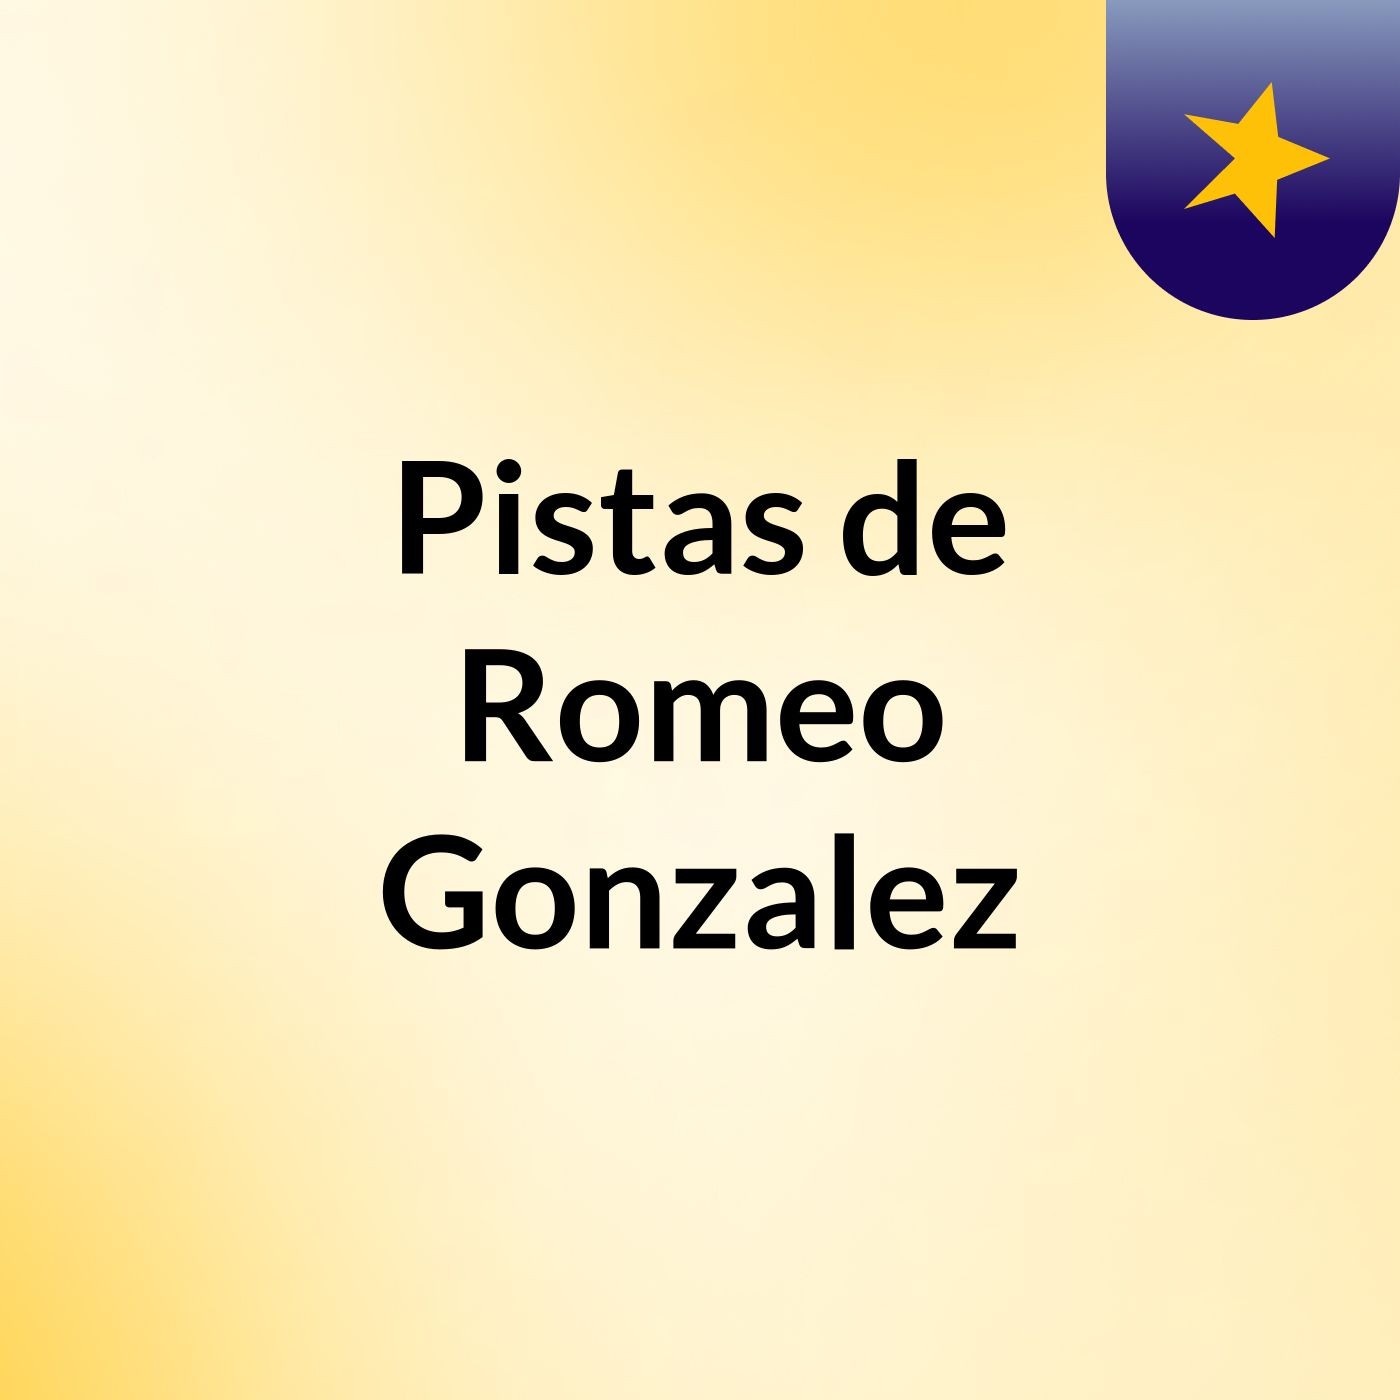 Pistas de Romeo Gonzalez